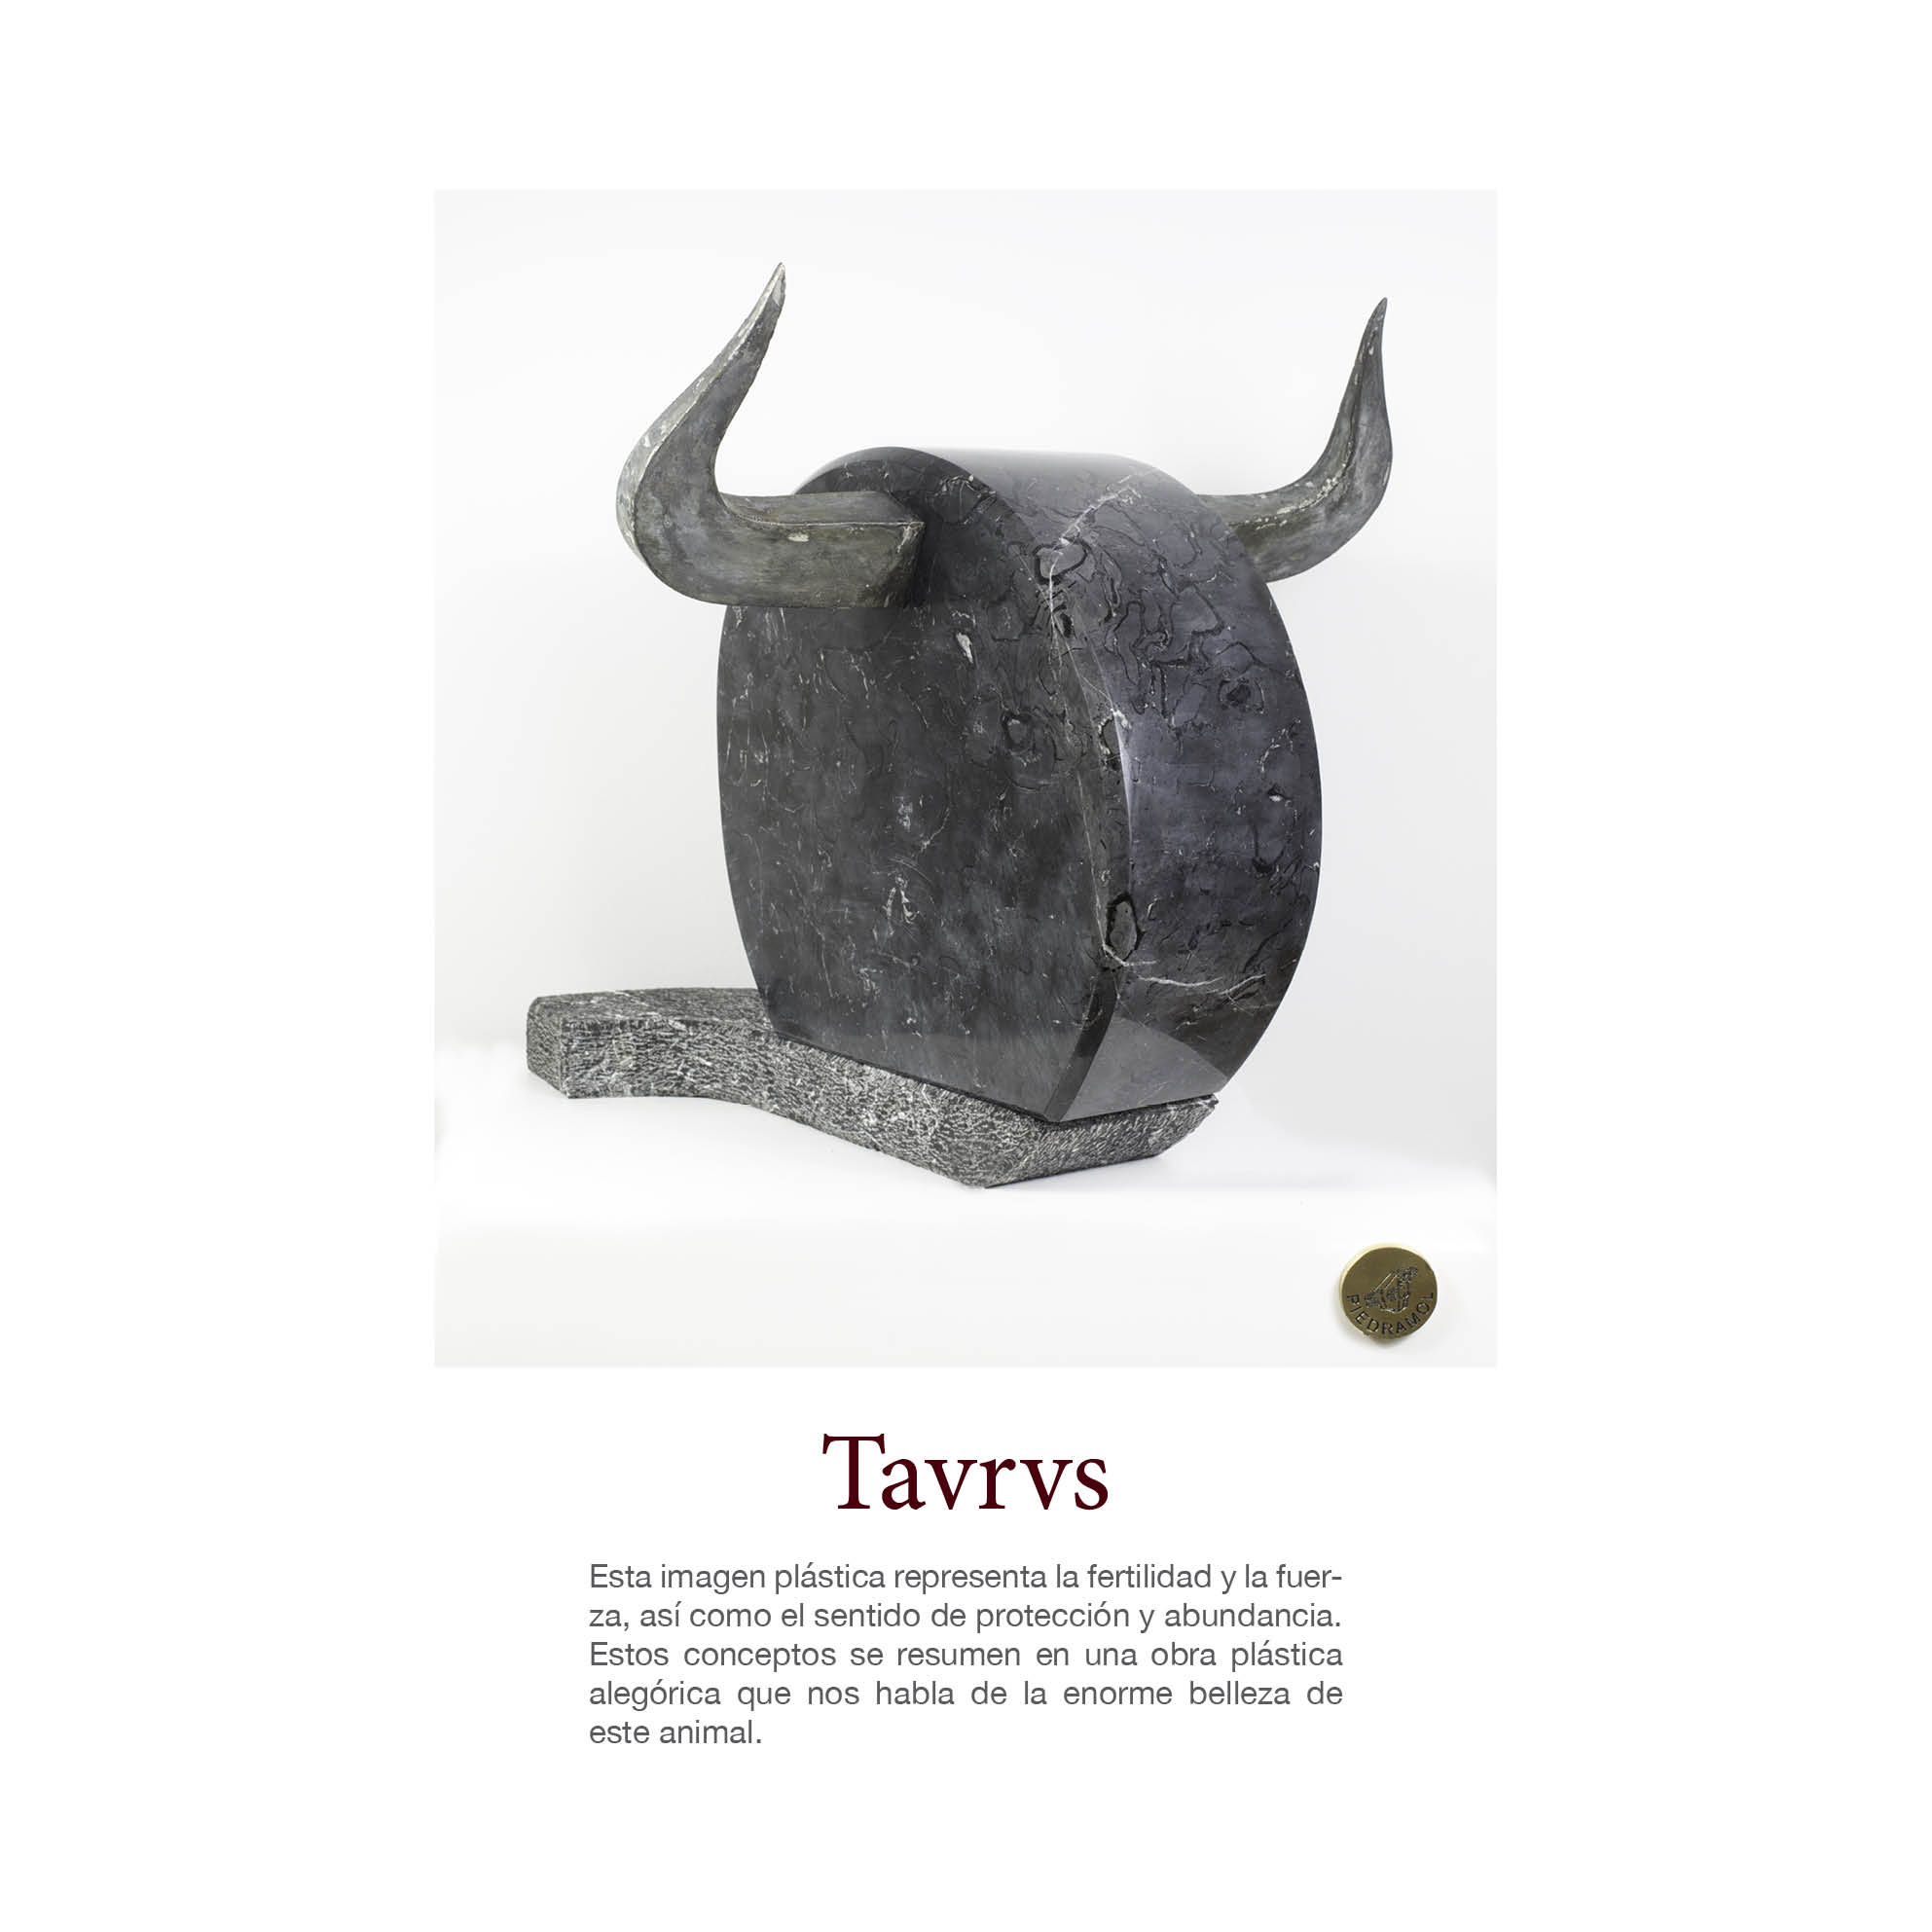 Exposición Tavrus